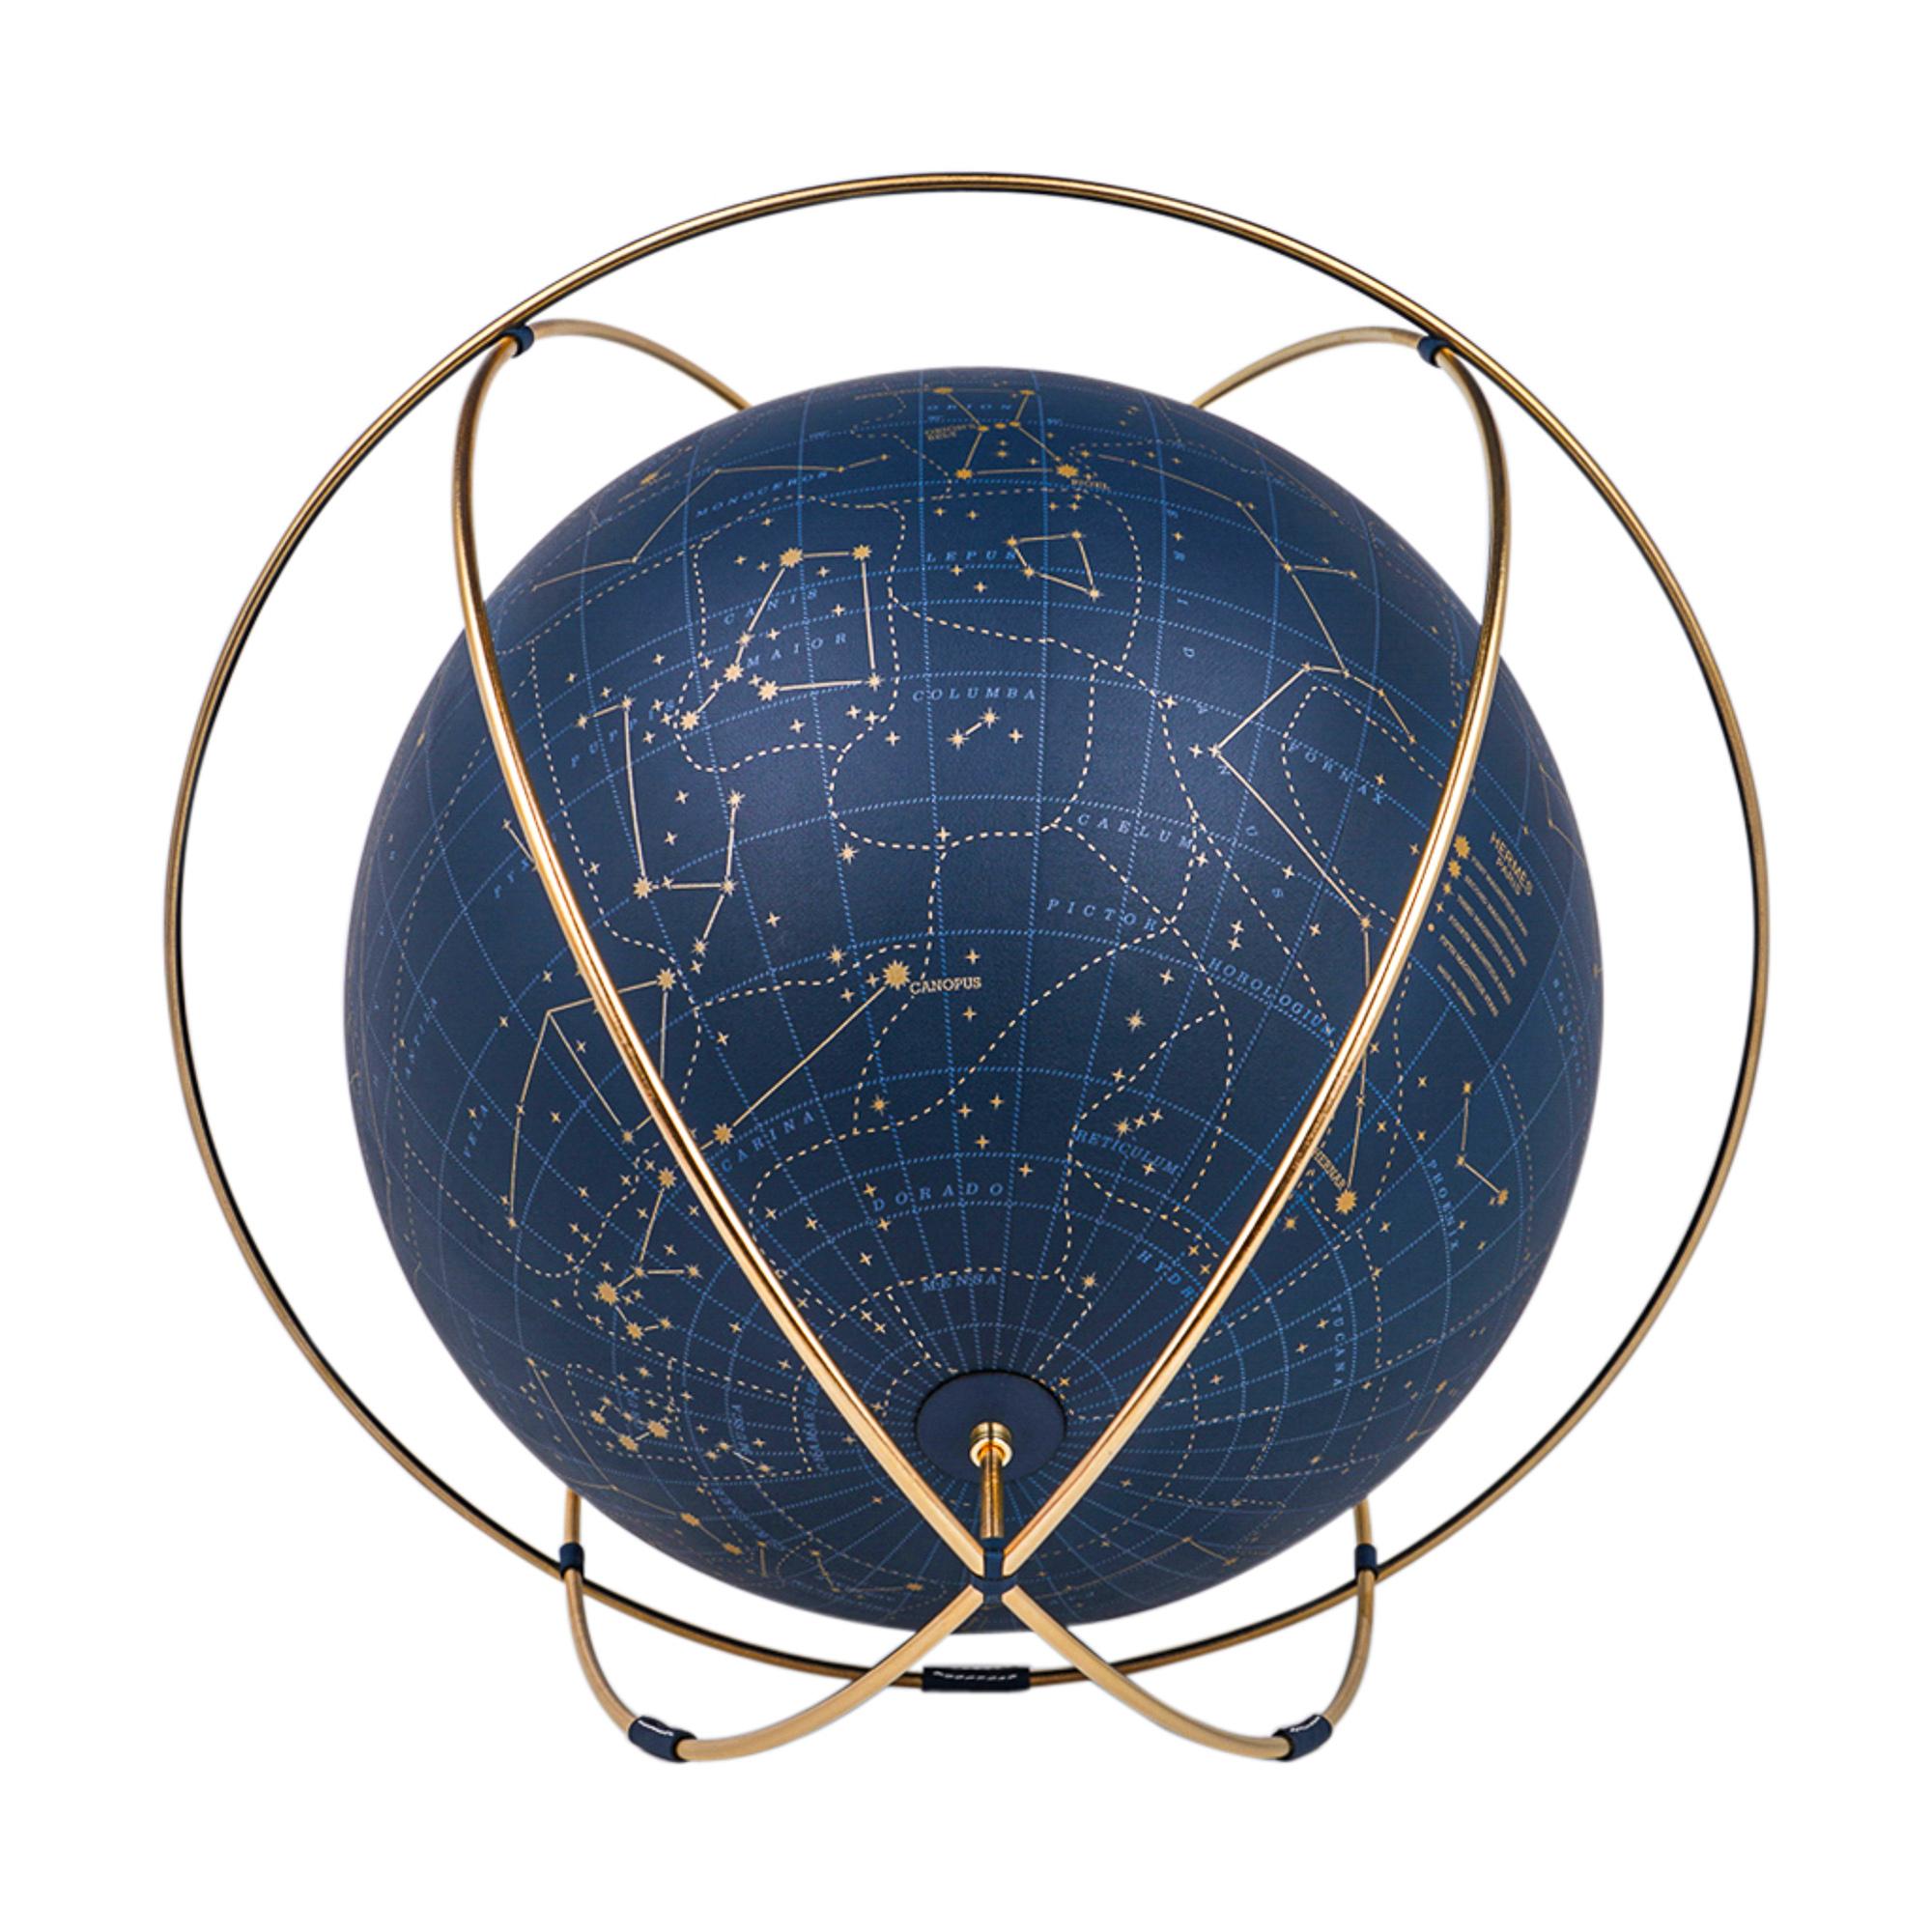 Mightychic bietet einen Hermes Apollo 24 Himmelsglobus in der Farbe Blue de Prusse an.
Die aus 12 ummantelten Stücken bedruckten Leders gefertigten Intarsien sind exquisit.
Der Globus schwebt auf den Ringen und schafft eine wunderschöne freie Form,